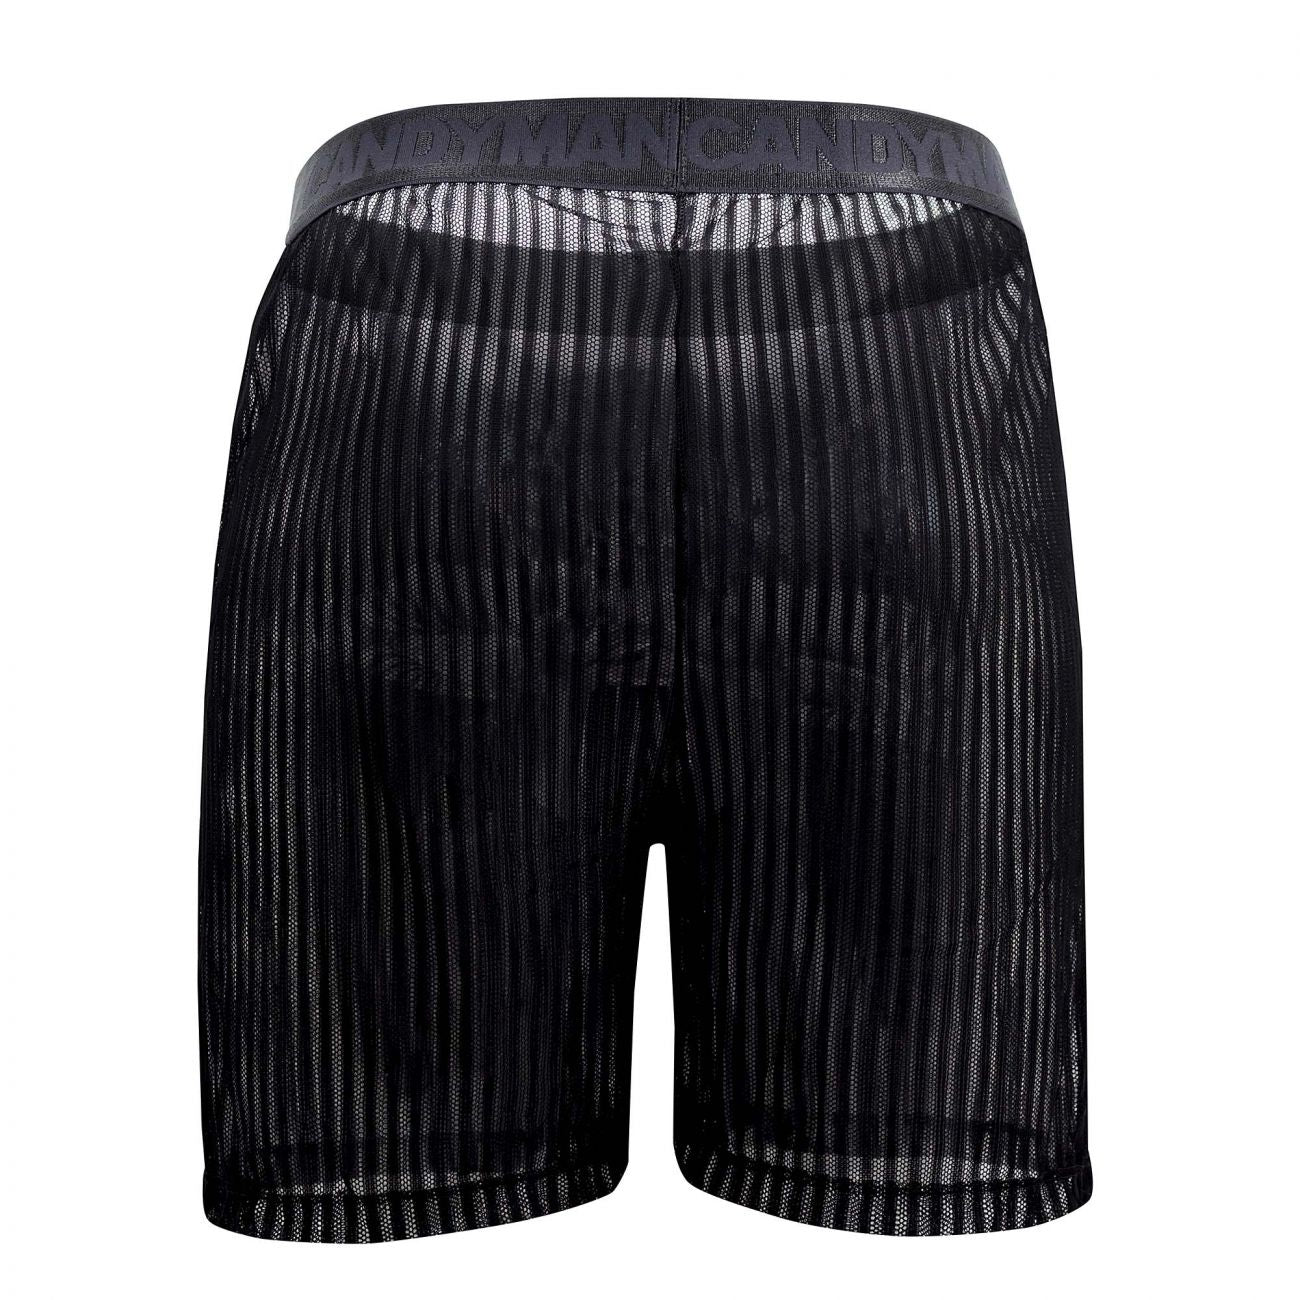 CandyMan 99497X Mesh Lounge Shorts Black Plus Sizes